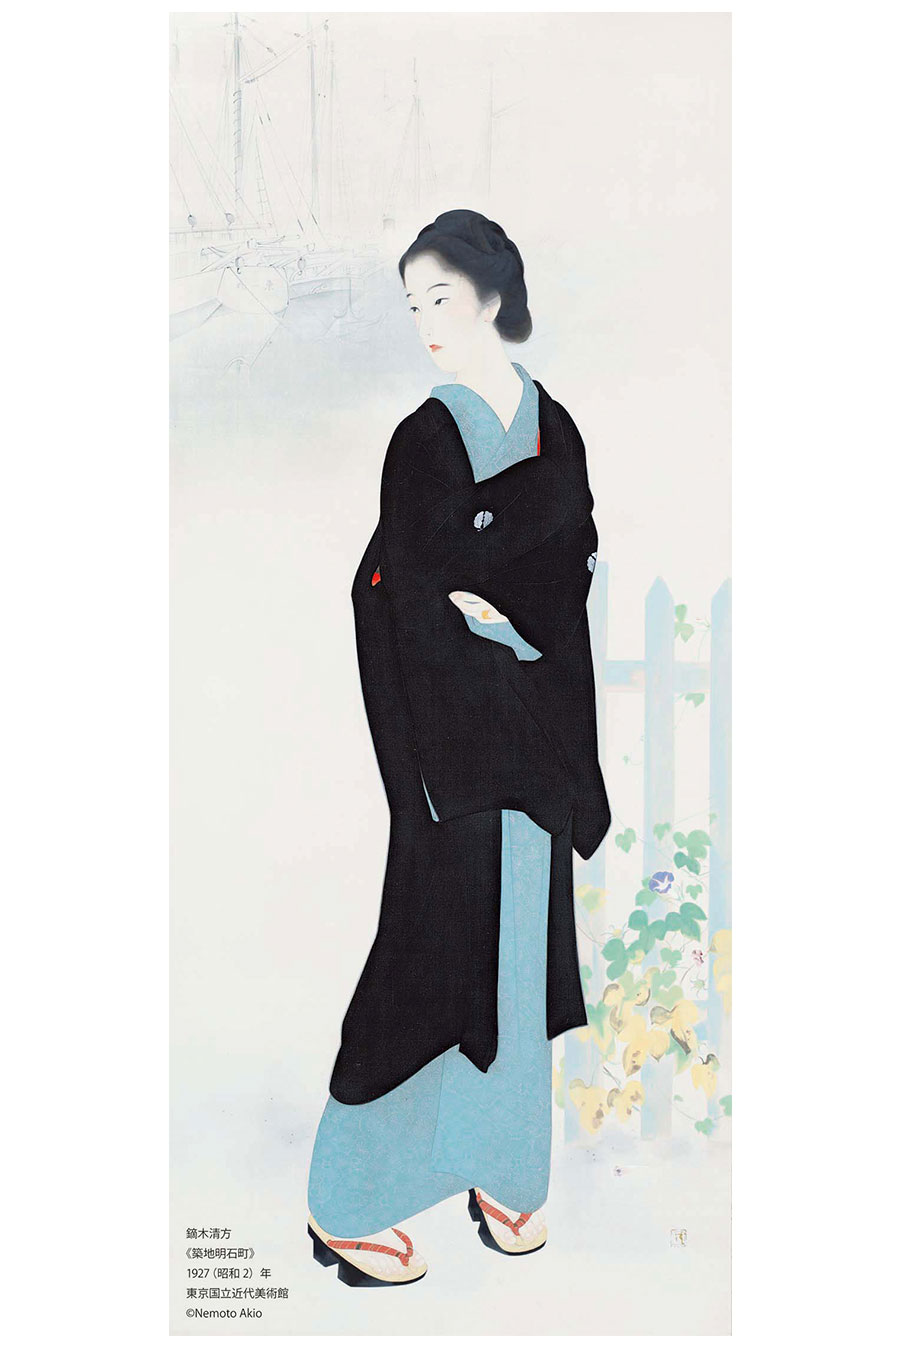 鏑木清方《築地明石町》1927(昭和2)年、東京国立近代美術館、通期展示、絹本彩色・軸、173.5×74.0cm ©Nemoto Akio